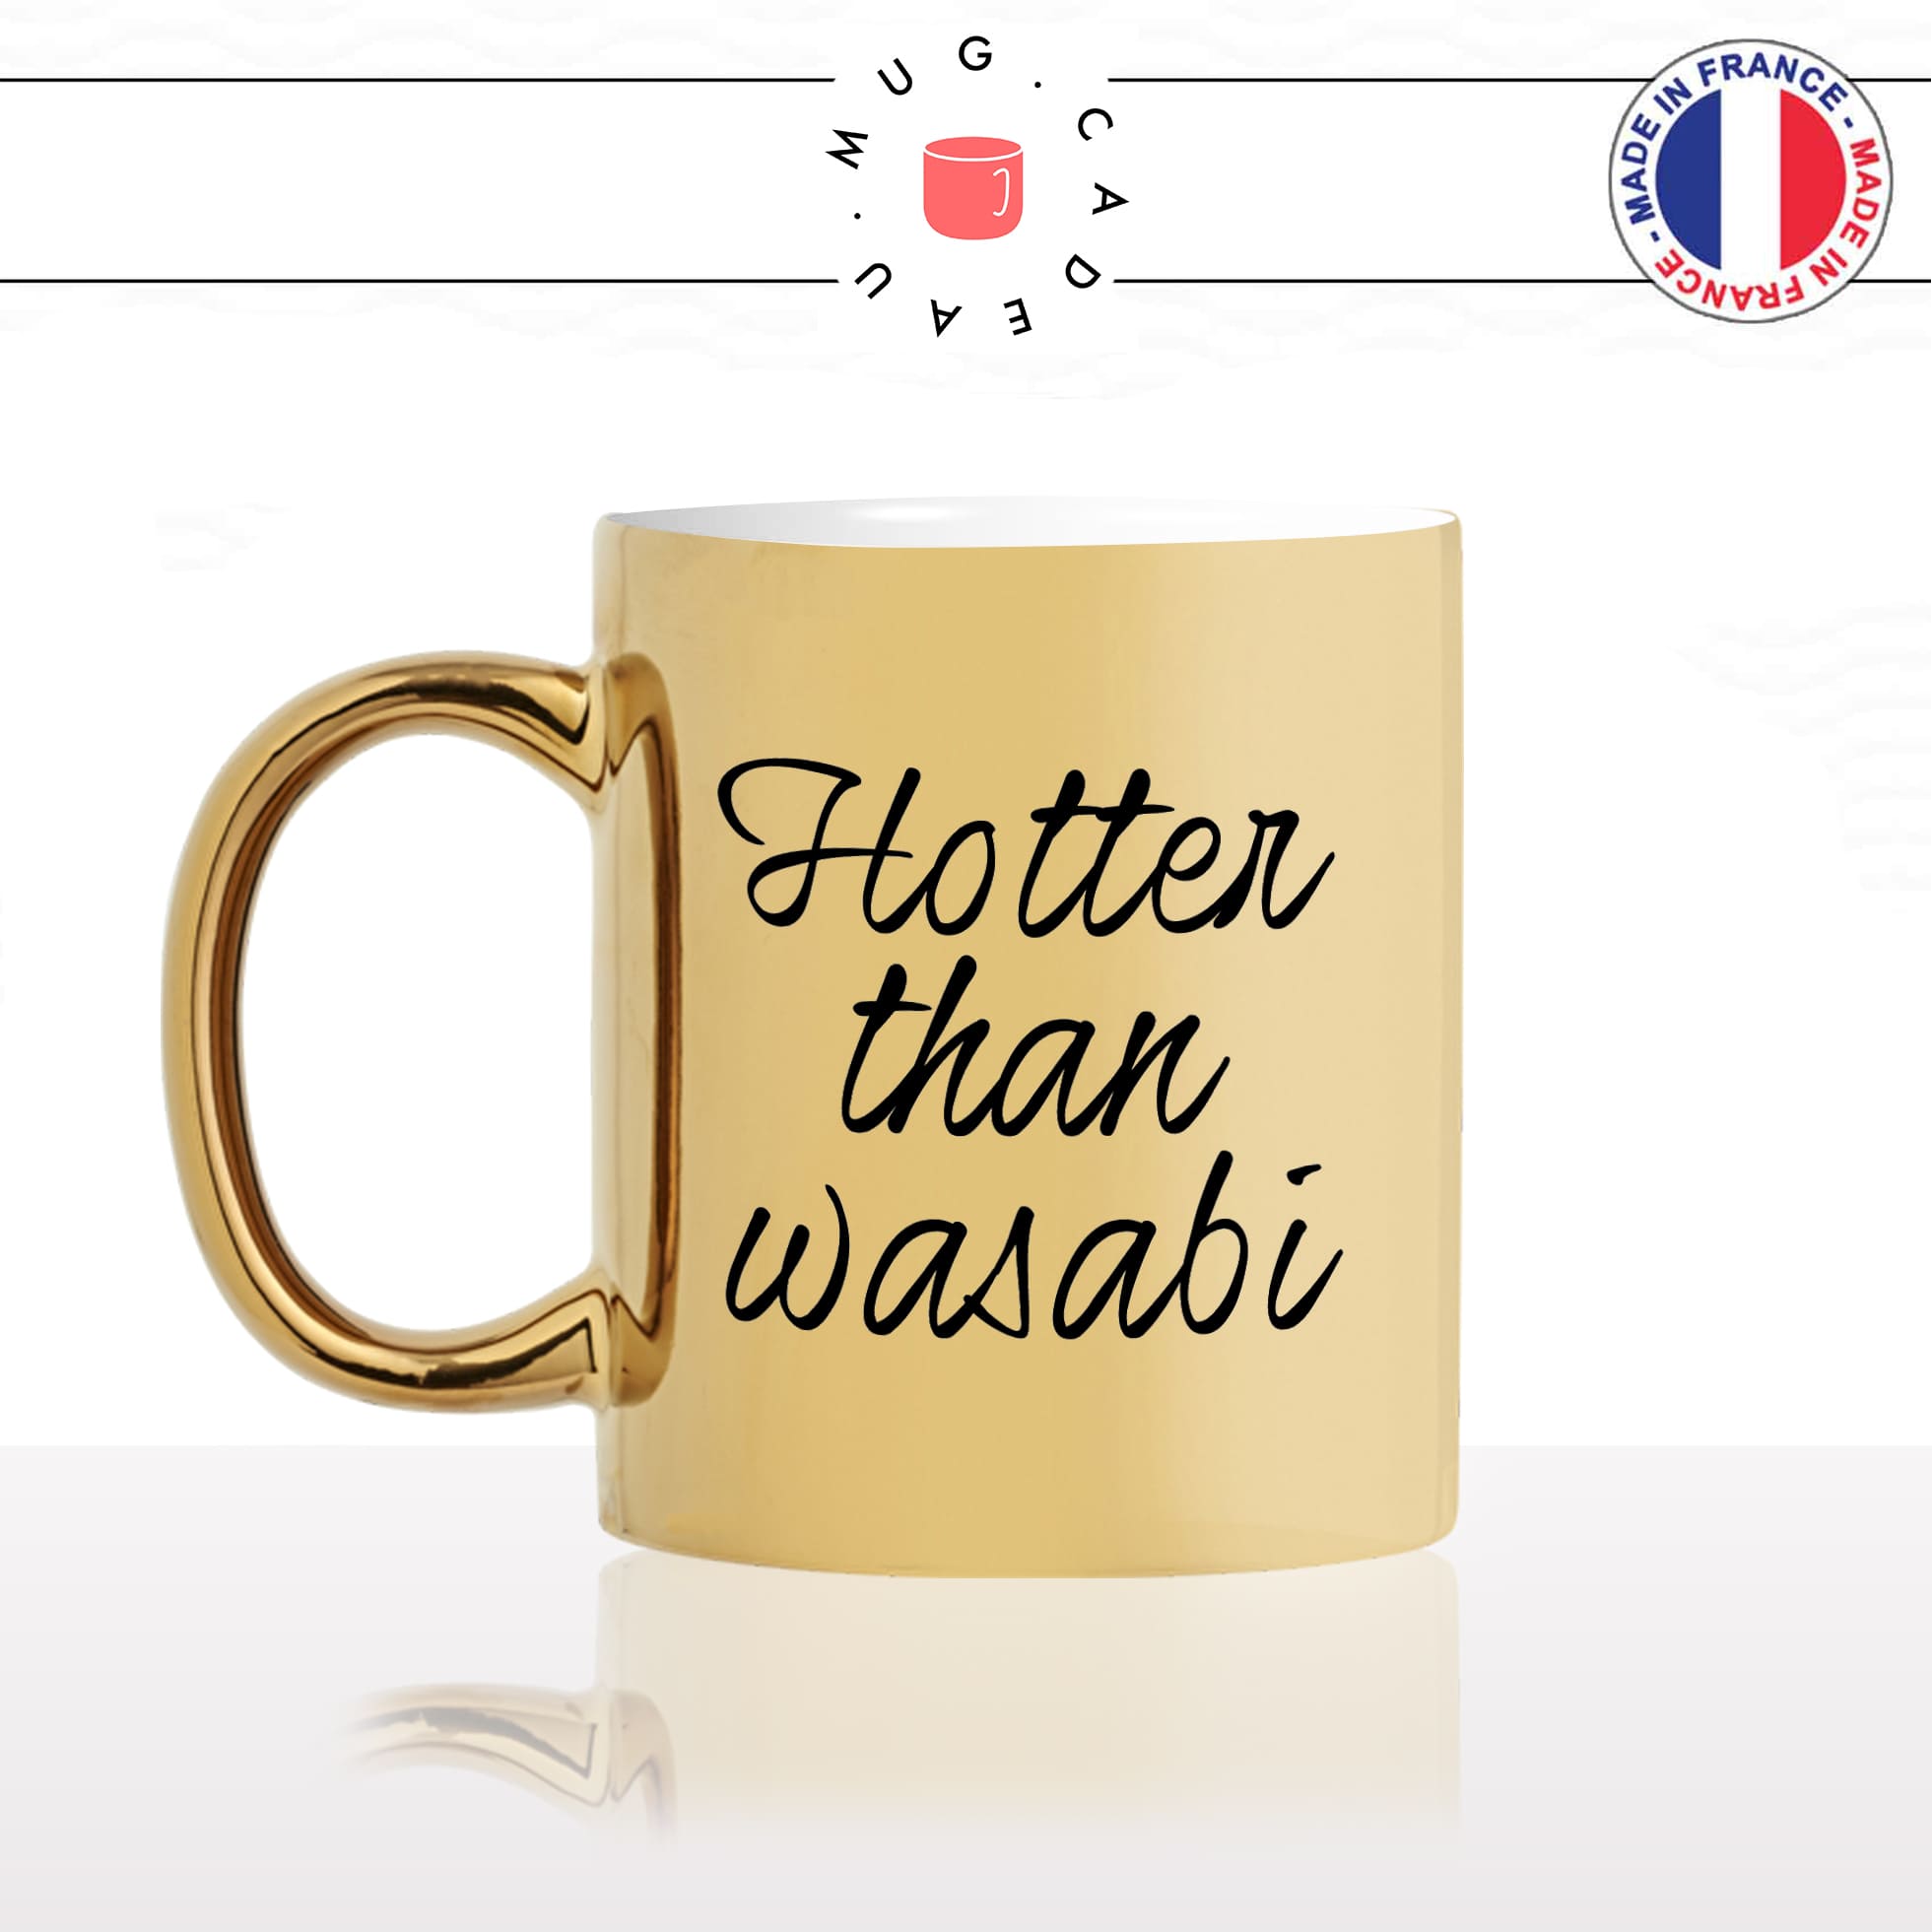 mug-tasse-or-doré-gold-unique-hotter-than-wasabi-plus-chaude-piment-sexy-homme-femme-humour-fun-cool-idée-cadeau-original